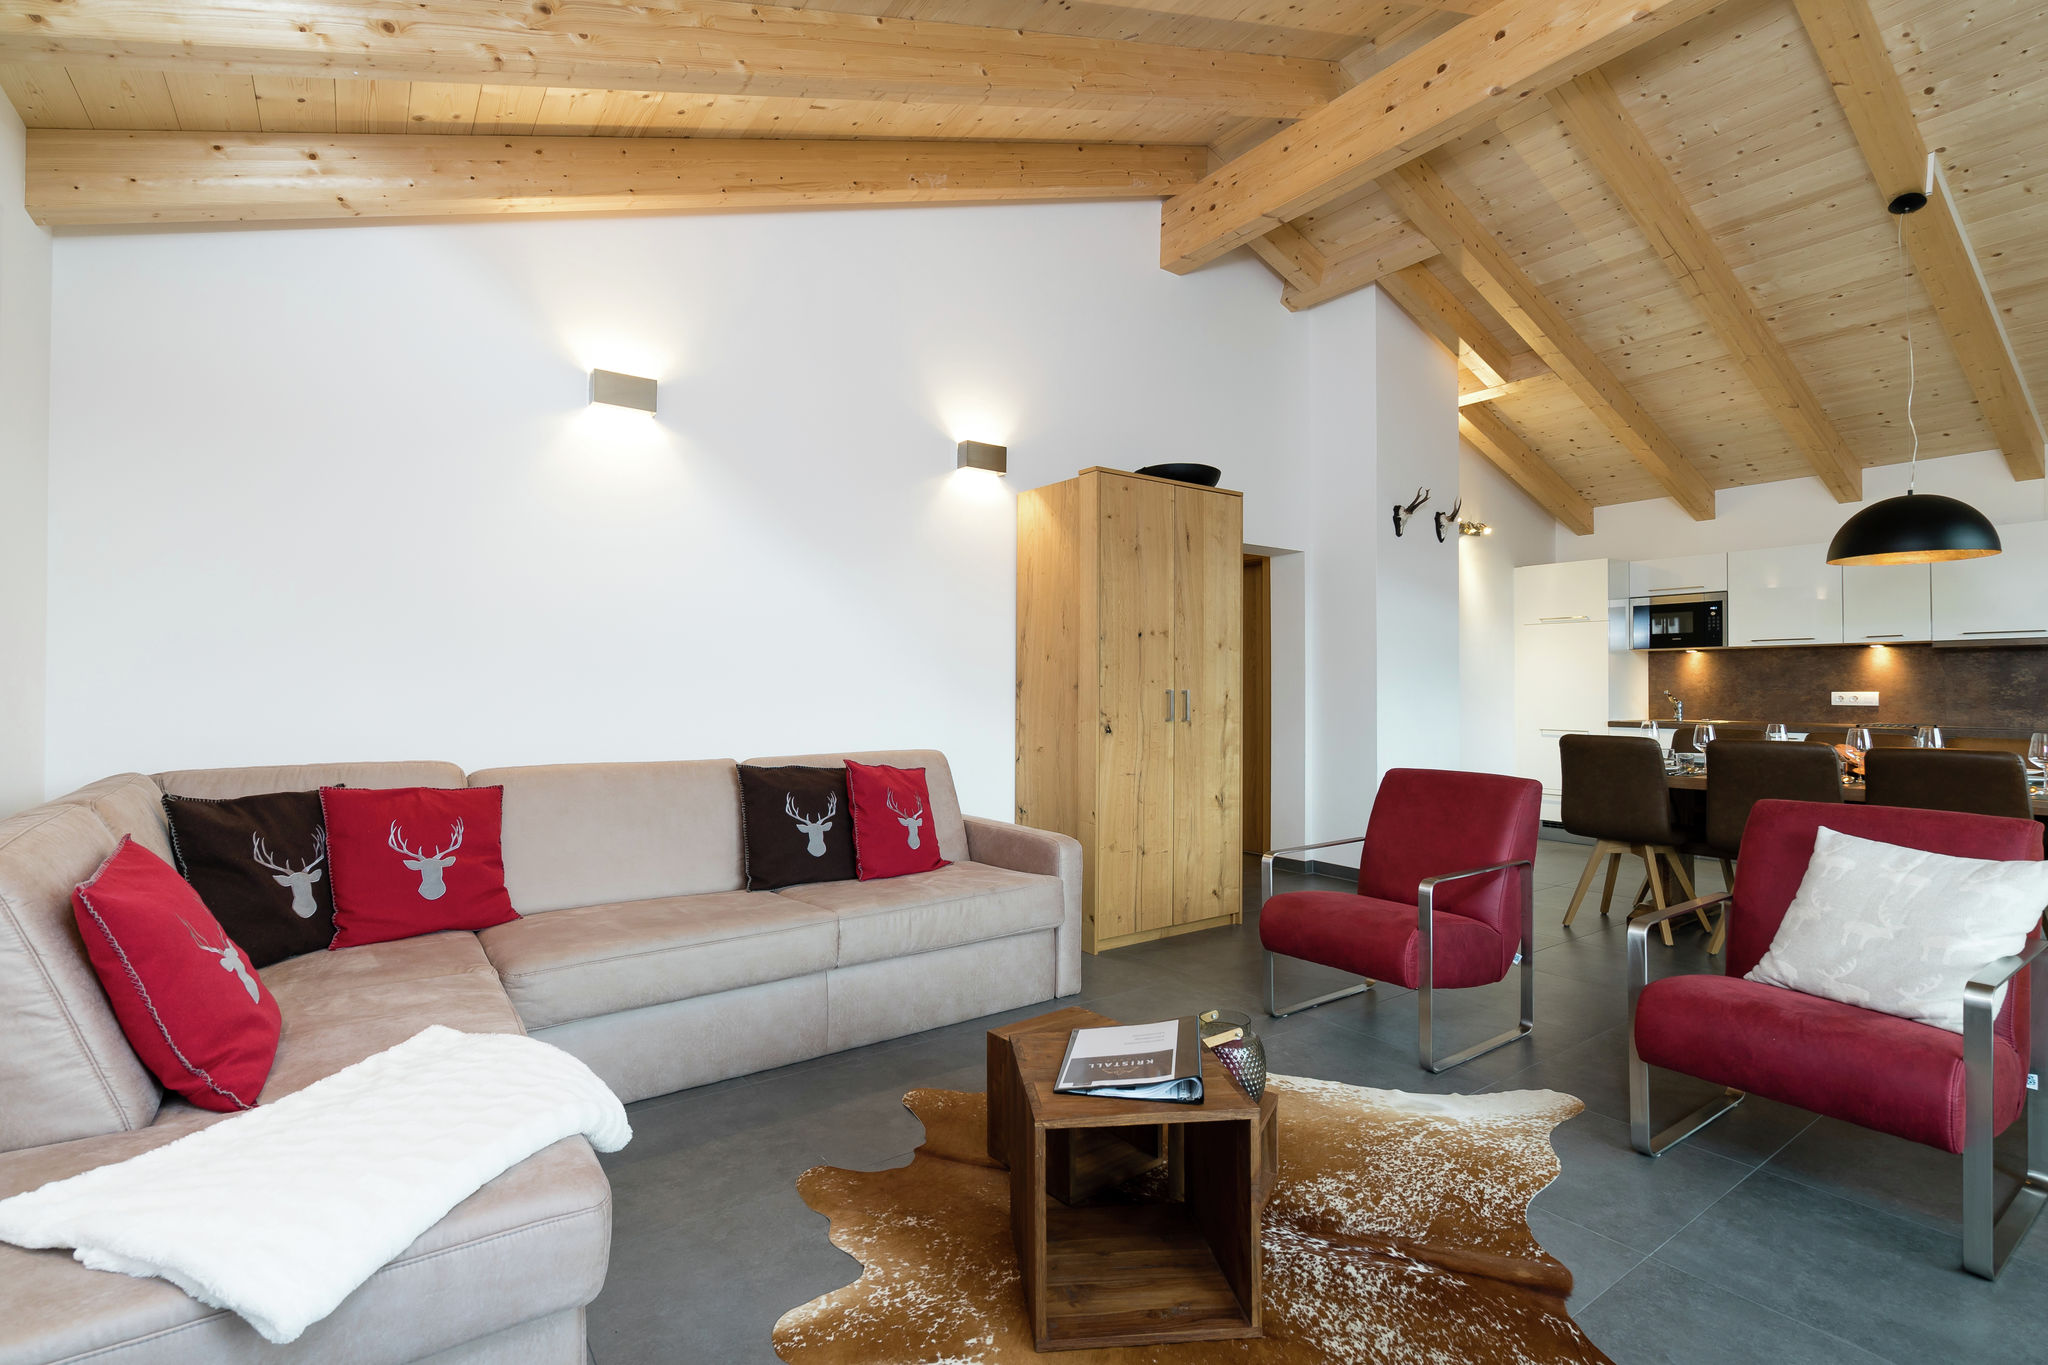 Chalet-Apartment in Skigebiet in Piesendorf